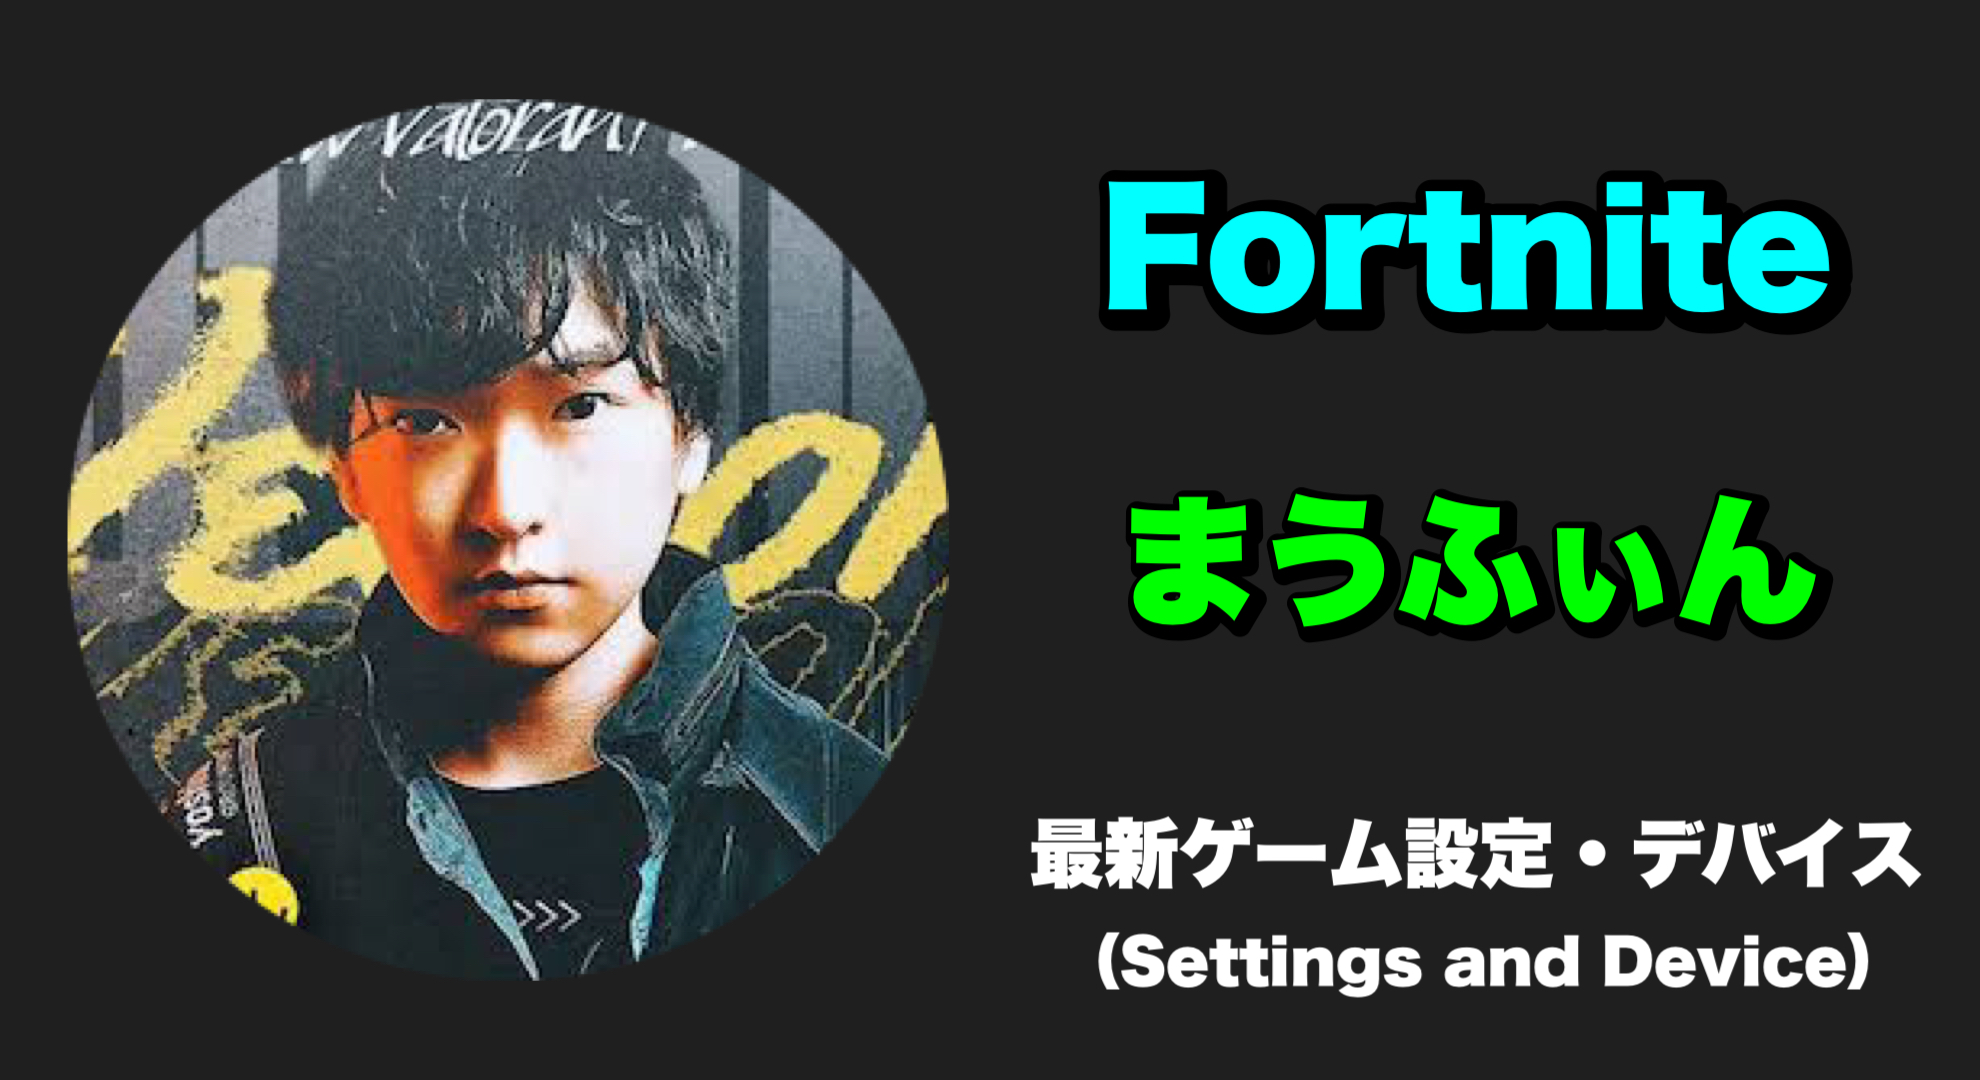 【Fortnite】Maufin(まうふぃん) 感度、キー配置、設定、デバイス